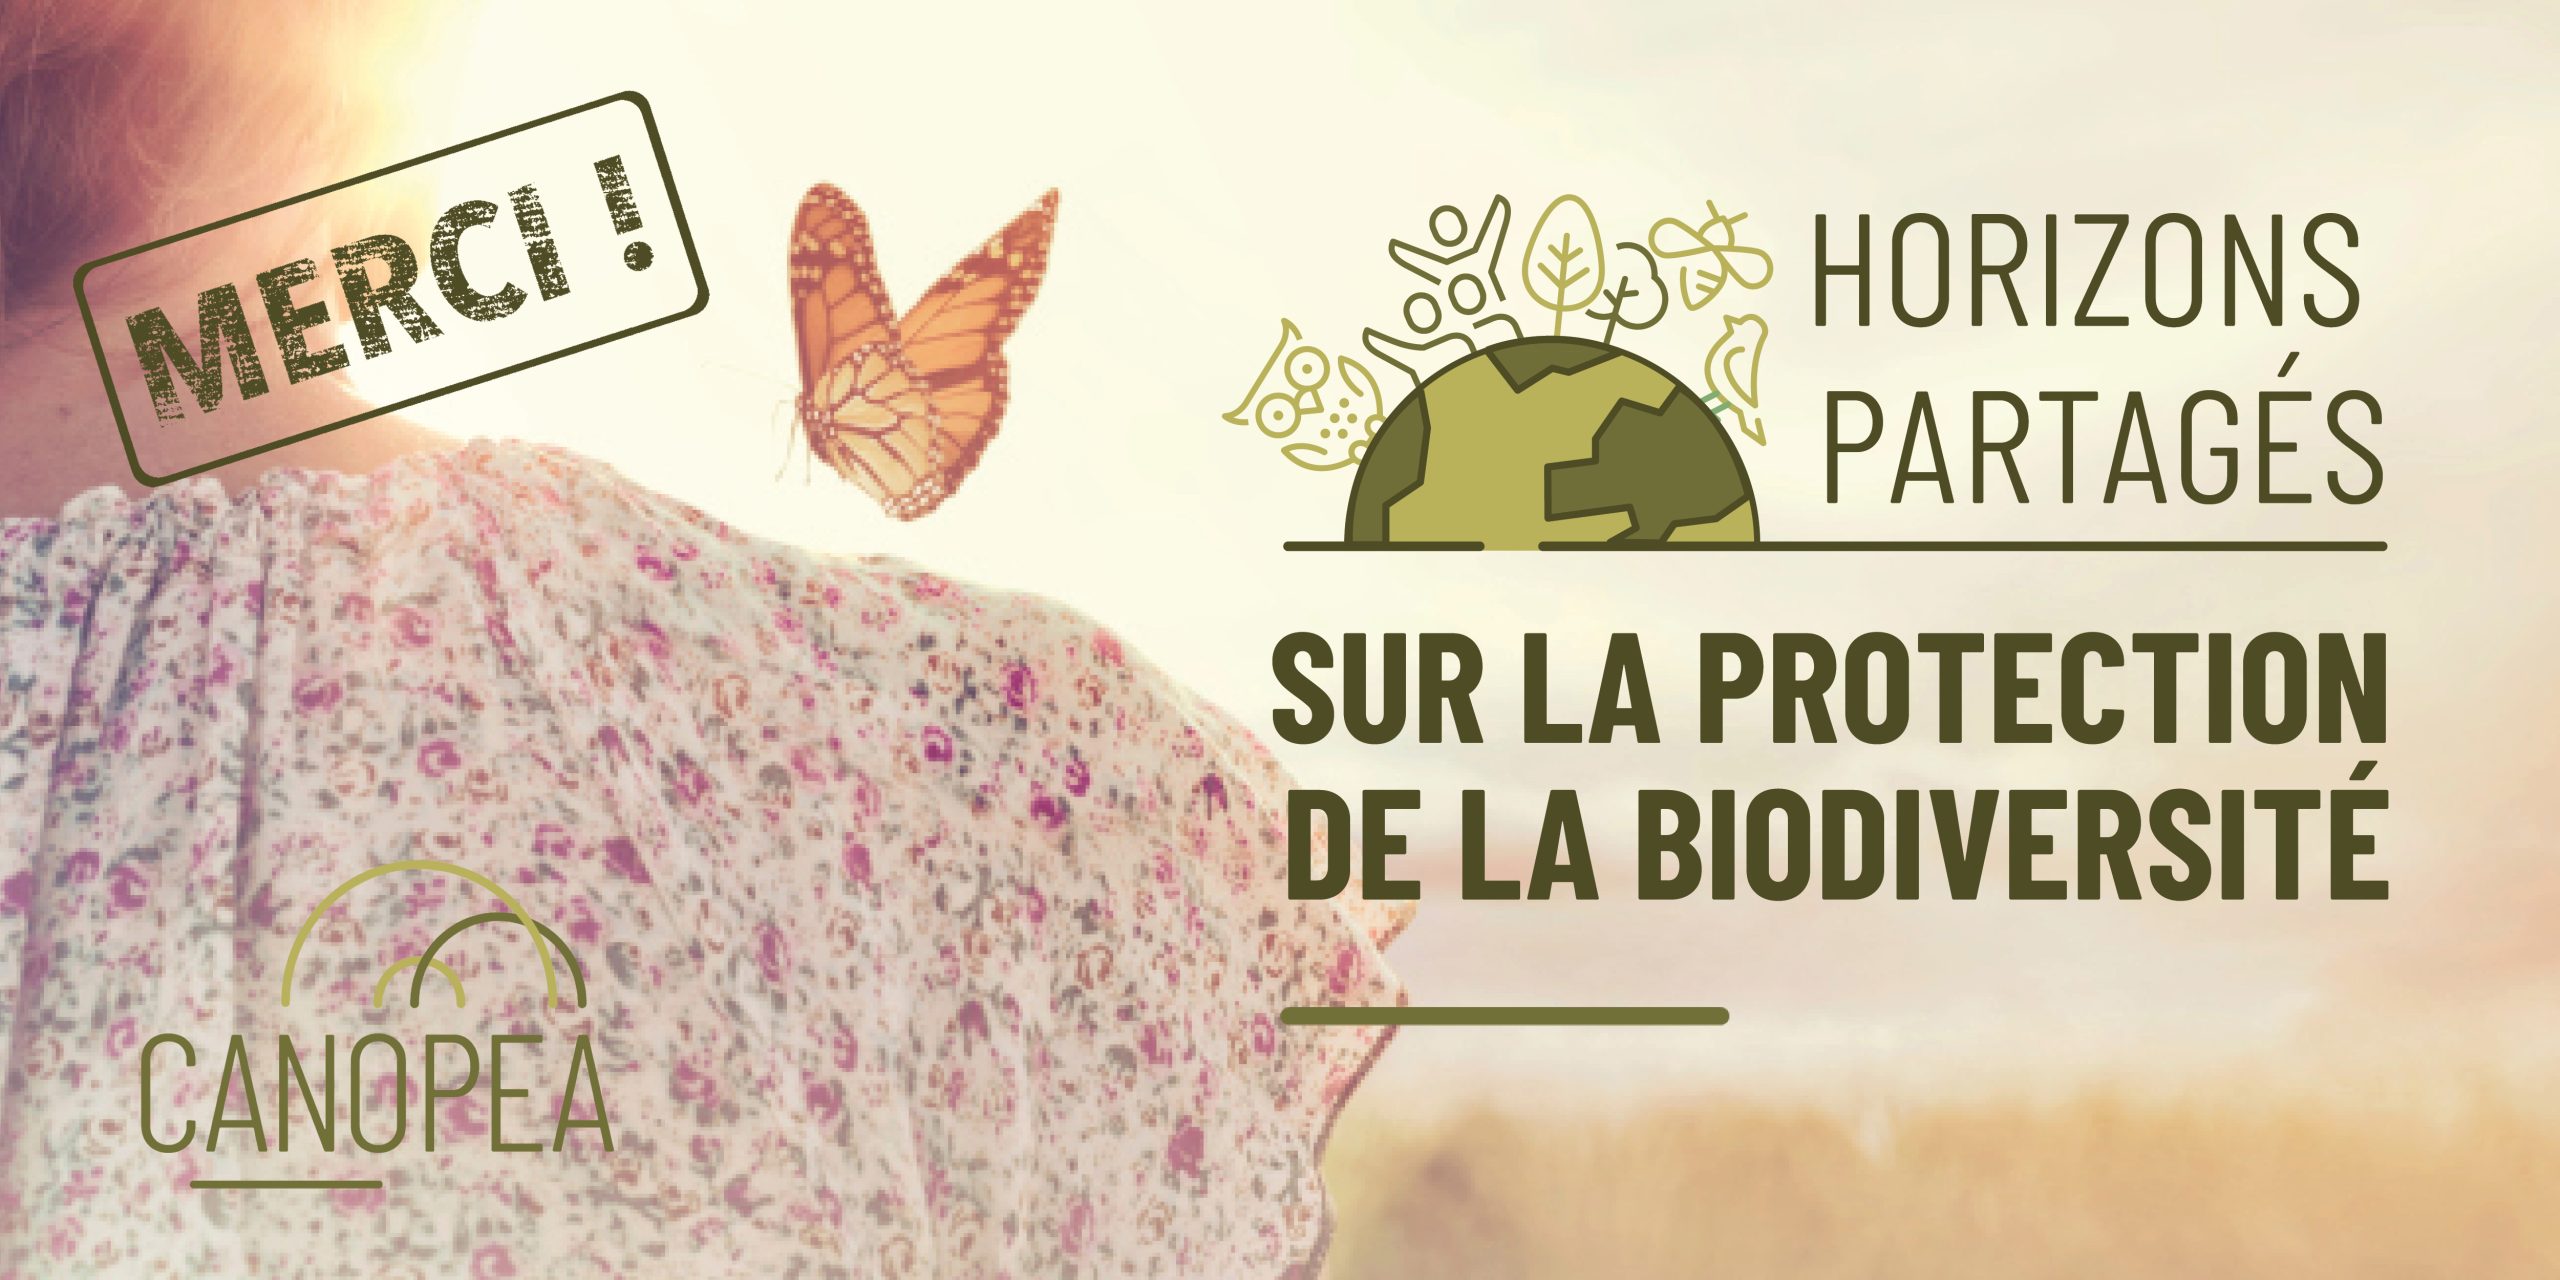 You are currently viewing Horizons partagés sur la protection de la biodiversité – Merci !